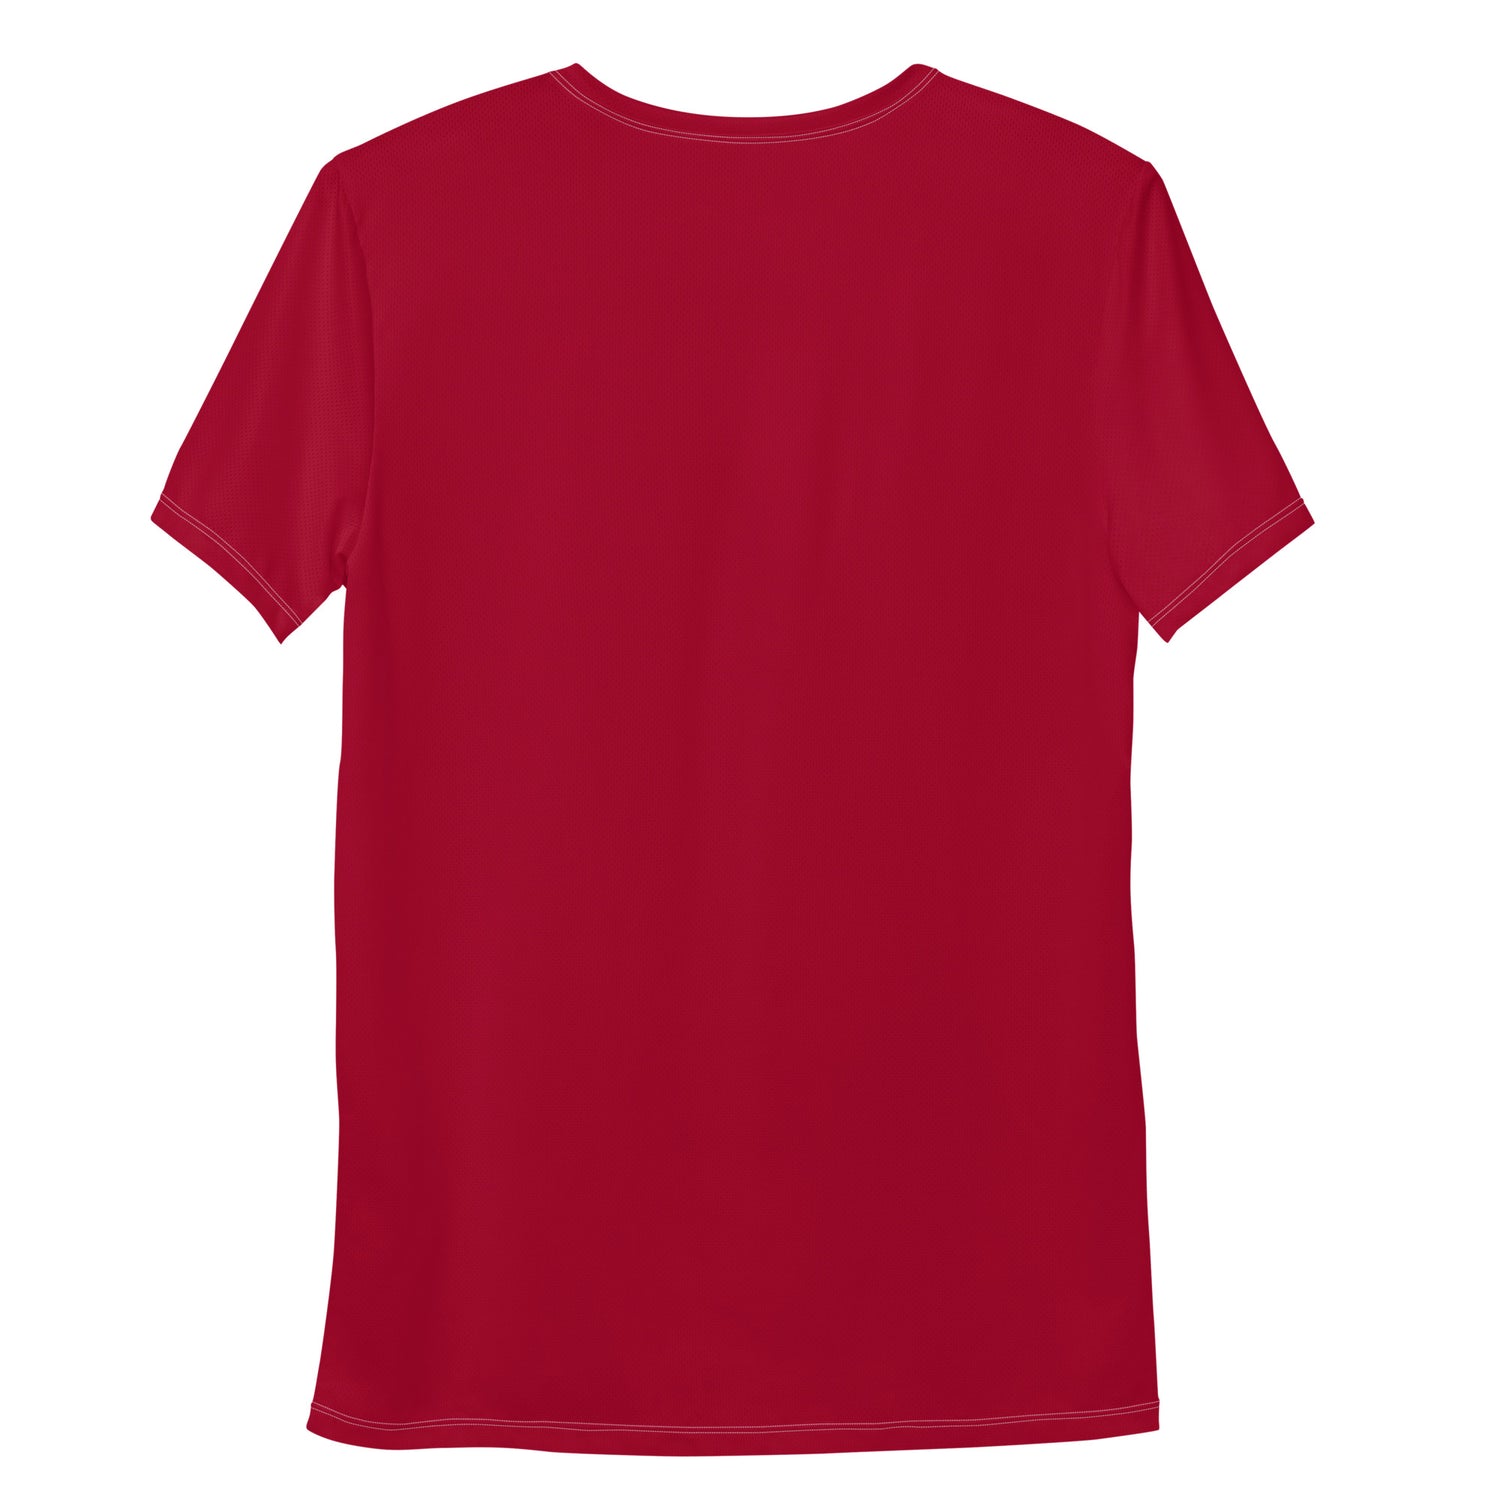 TIME OF VIBES TOV Herren Sport T-Shirt (Rot) - €45,00